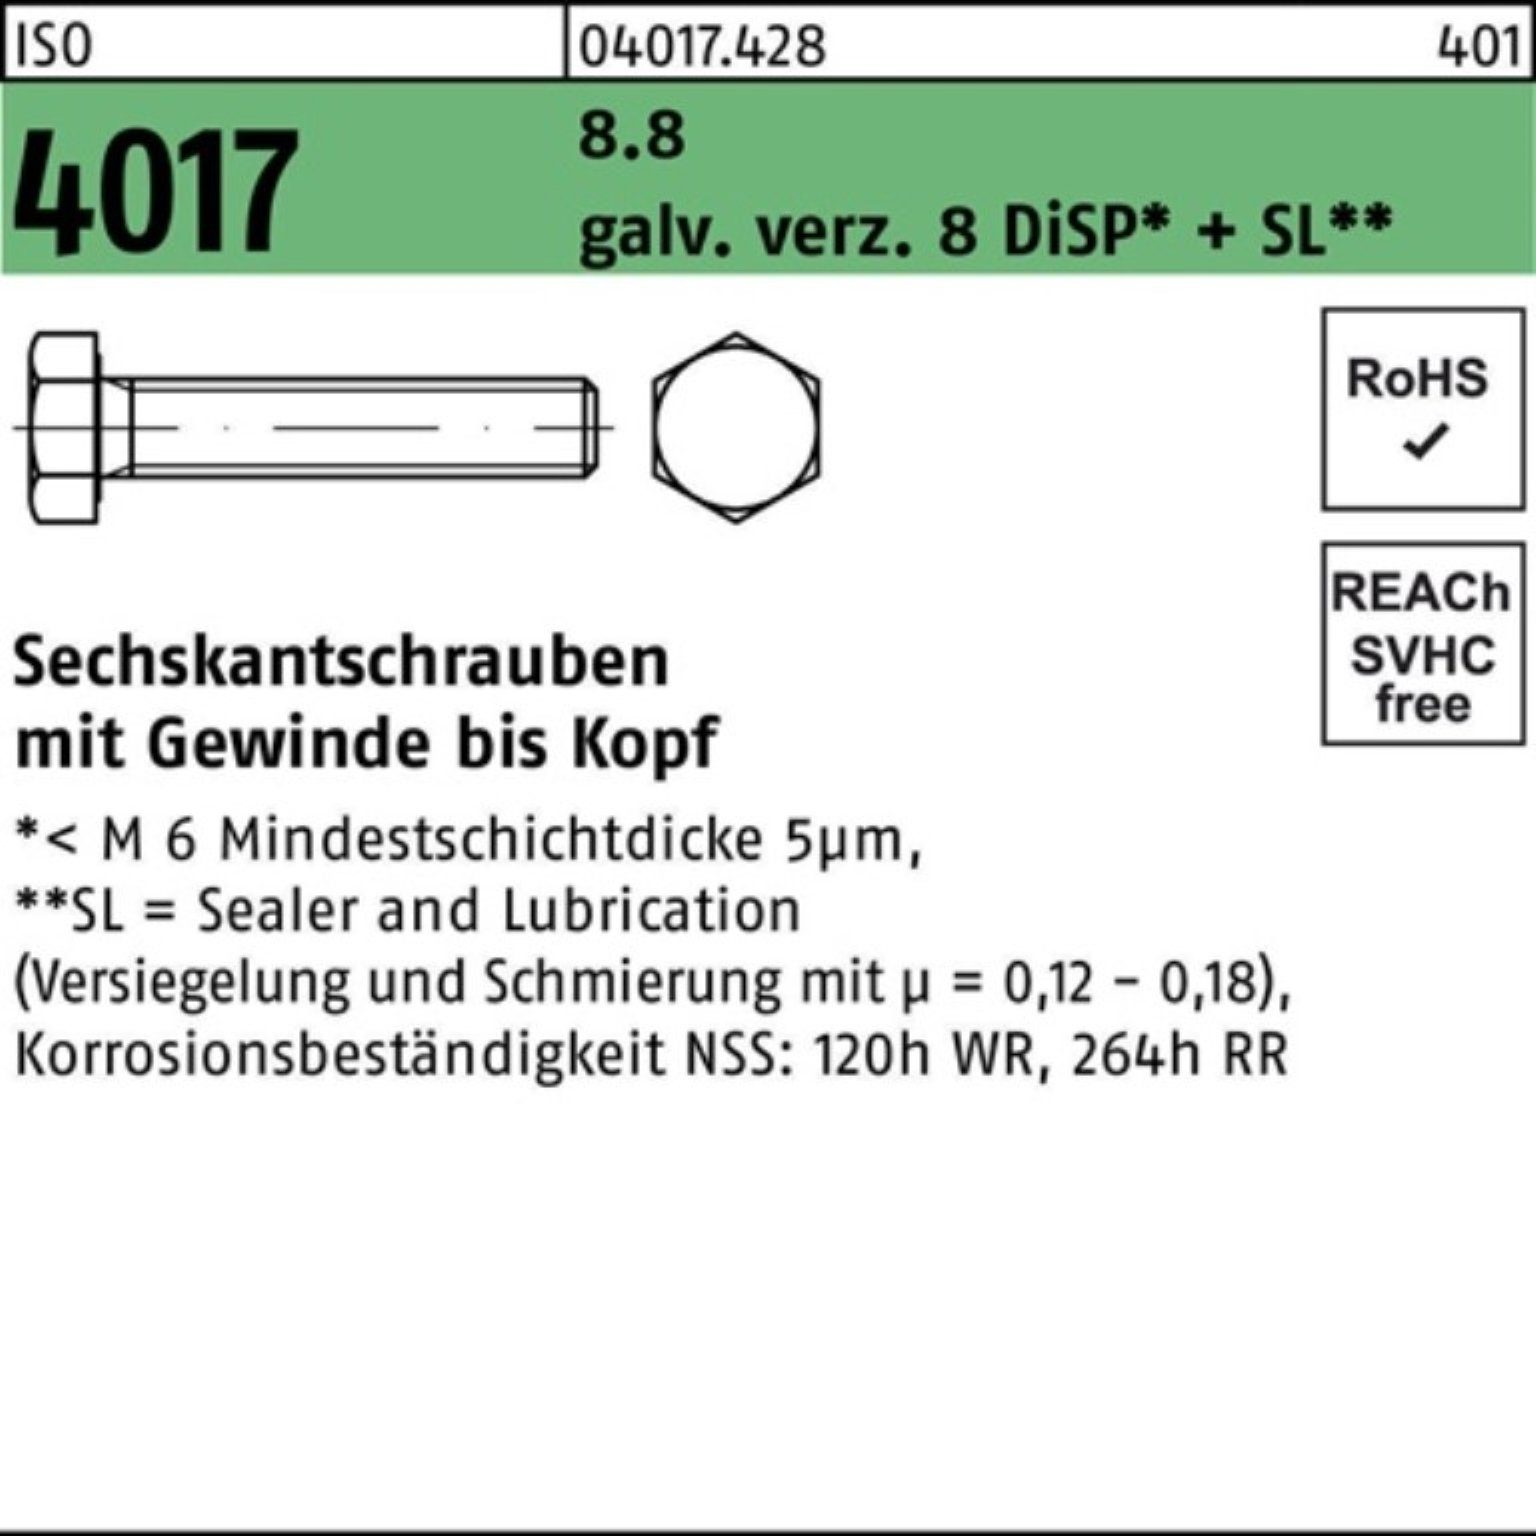 Bufab Sechskantschraube 500er 4017 Sechskantschraube M4x 8.8 galv.verz. Pack DiSP+ VG ISO 12 8